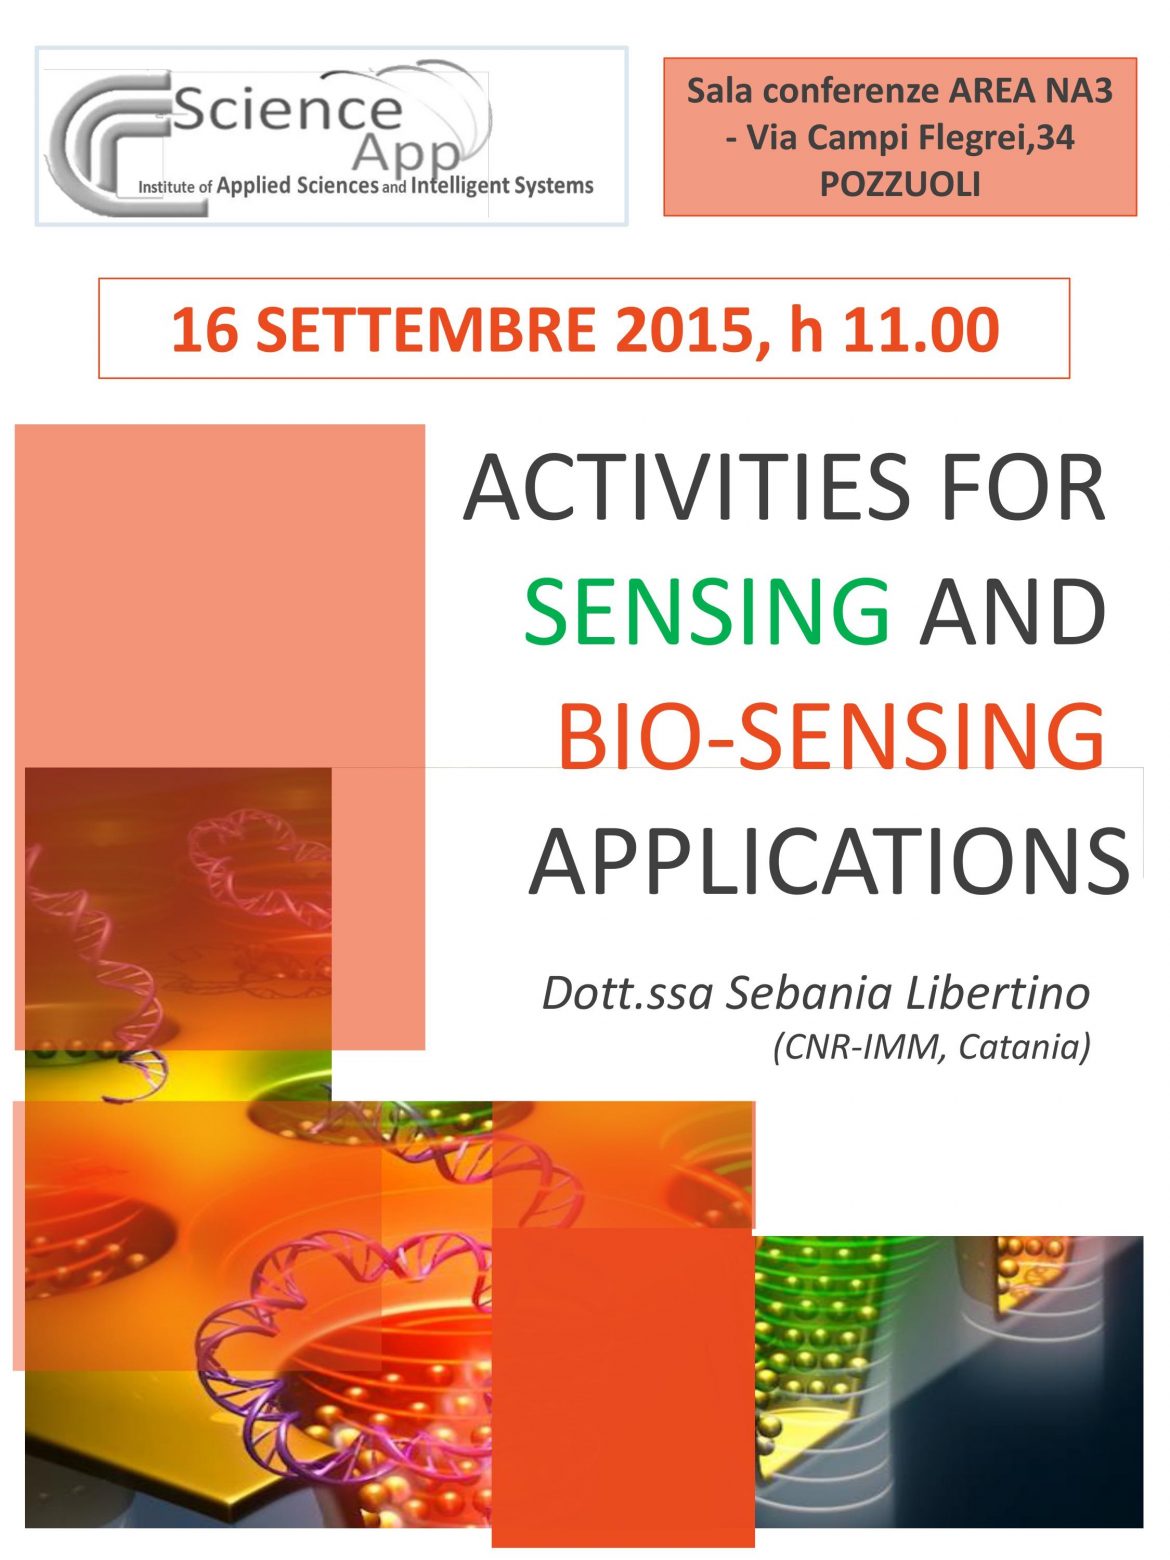 Activities for sensing and bio-sensing applications